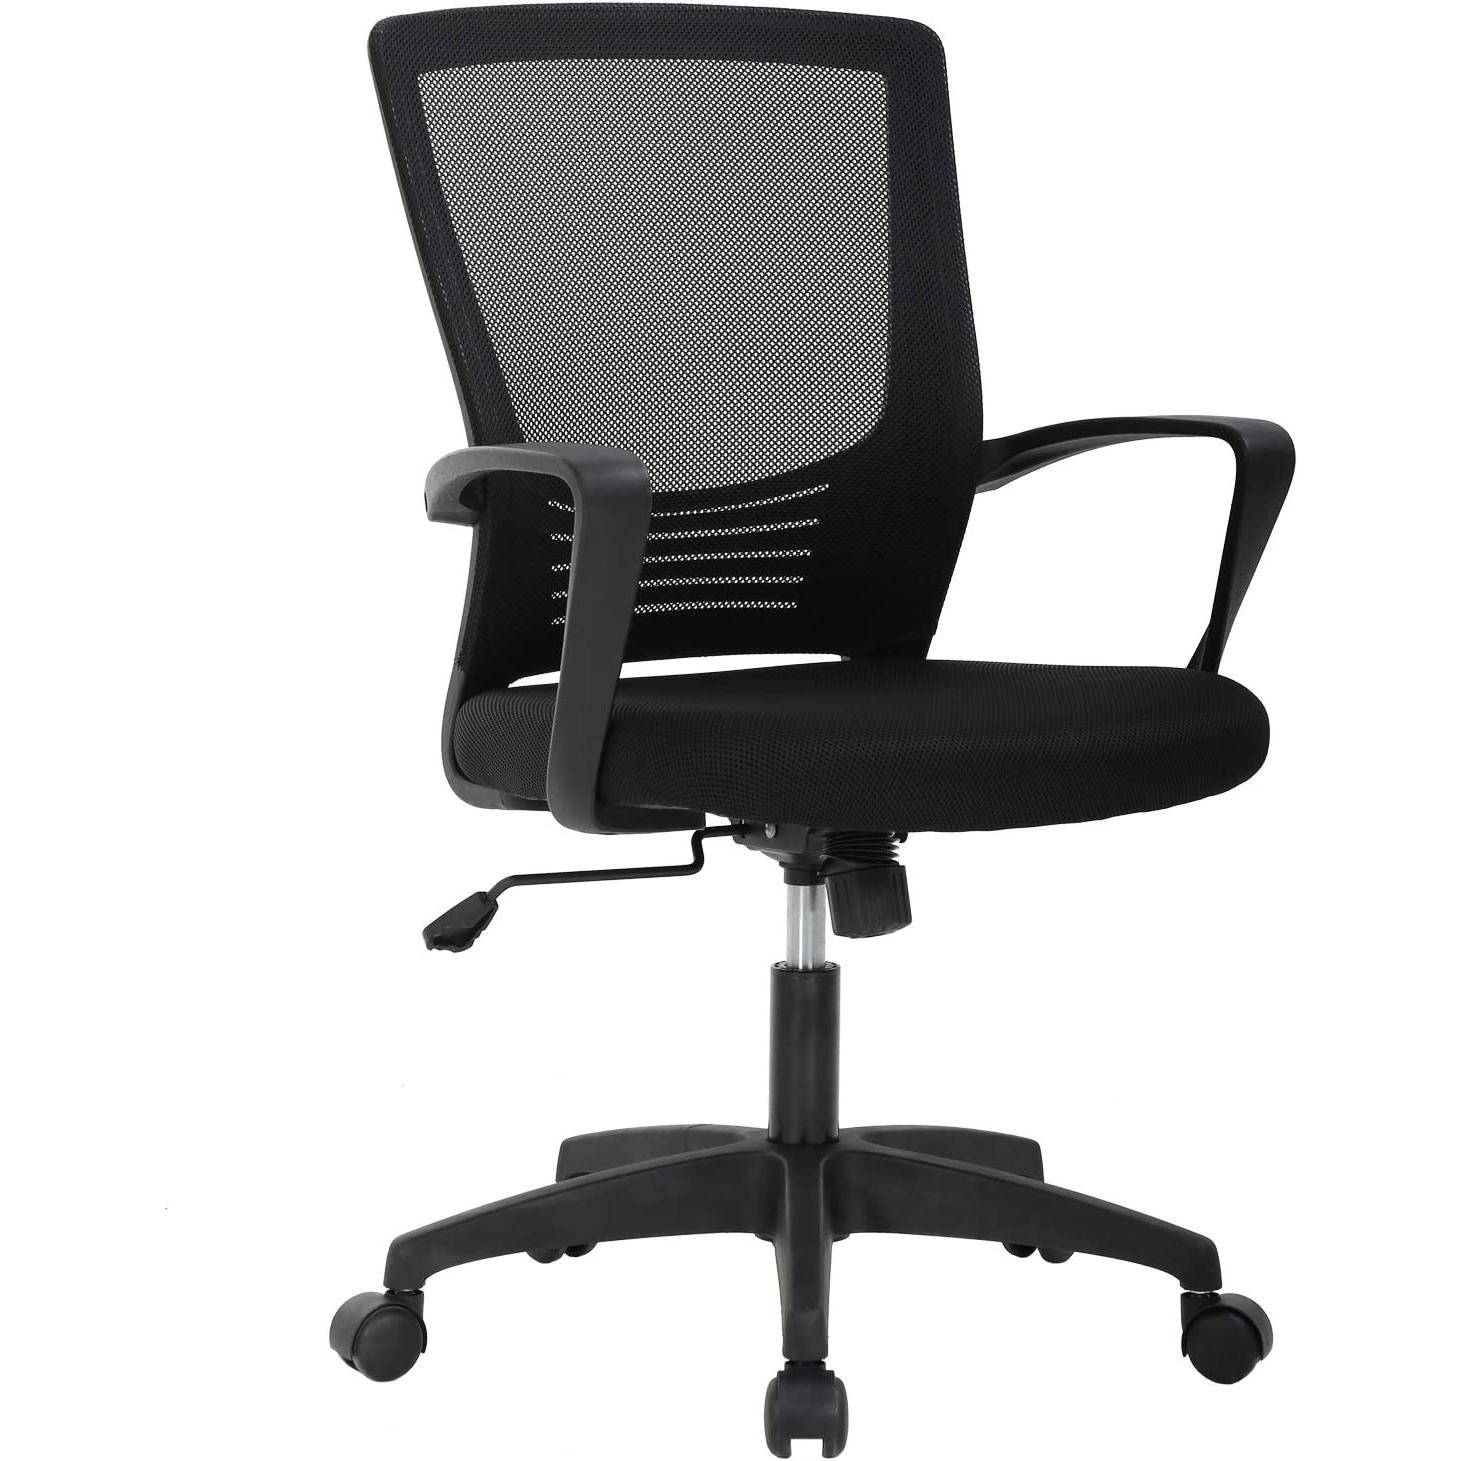 T-Lovendo - T-LoVendo - Silla de oficina o escritorio ergonómica con soporte lumbar y respaldo de malla transpirable. Altura regulable. Giratoria. Color Negro.